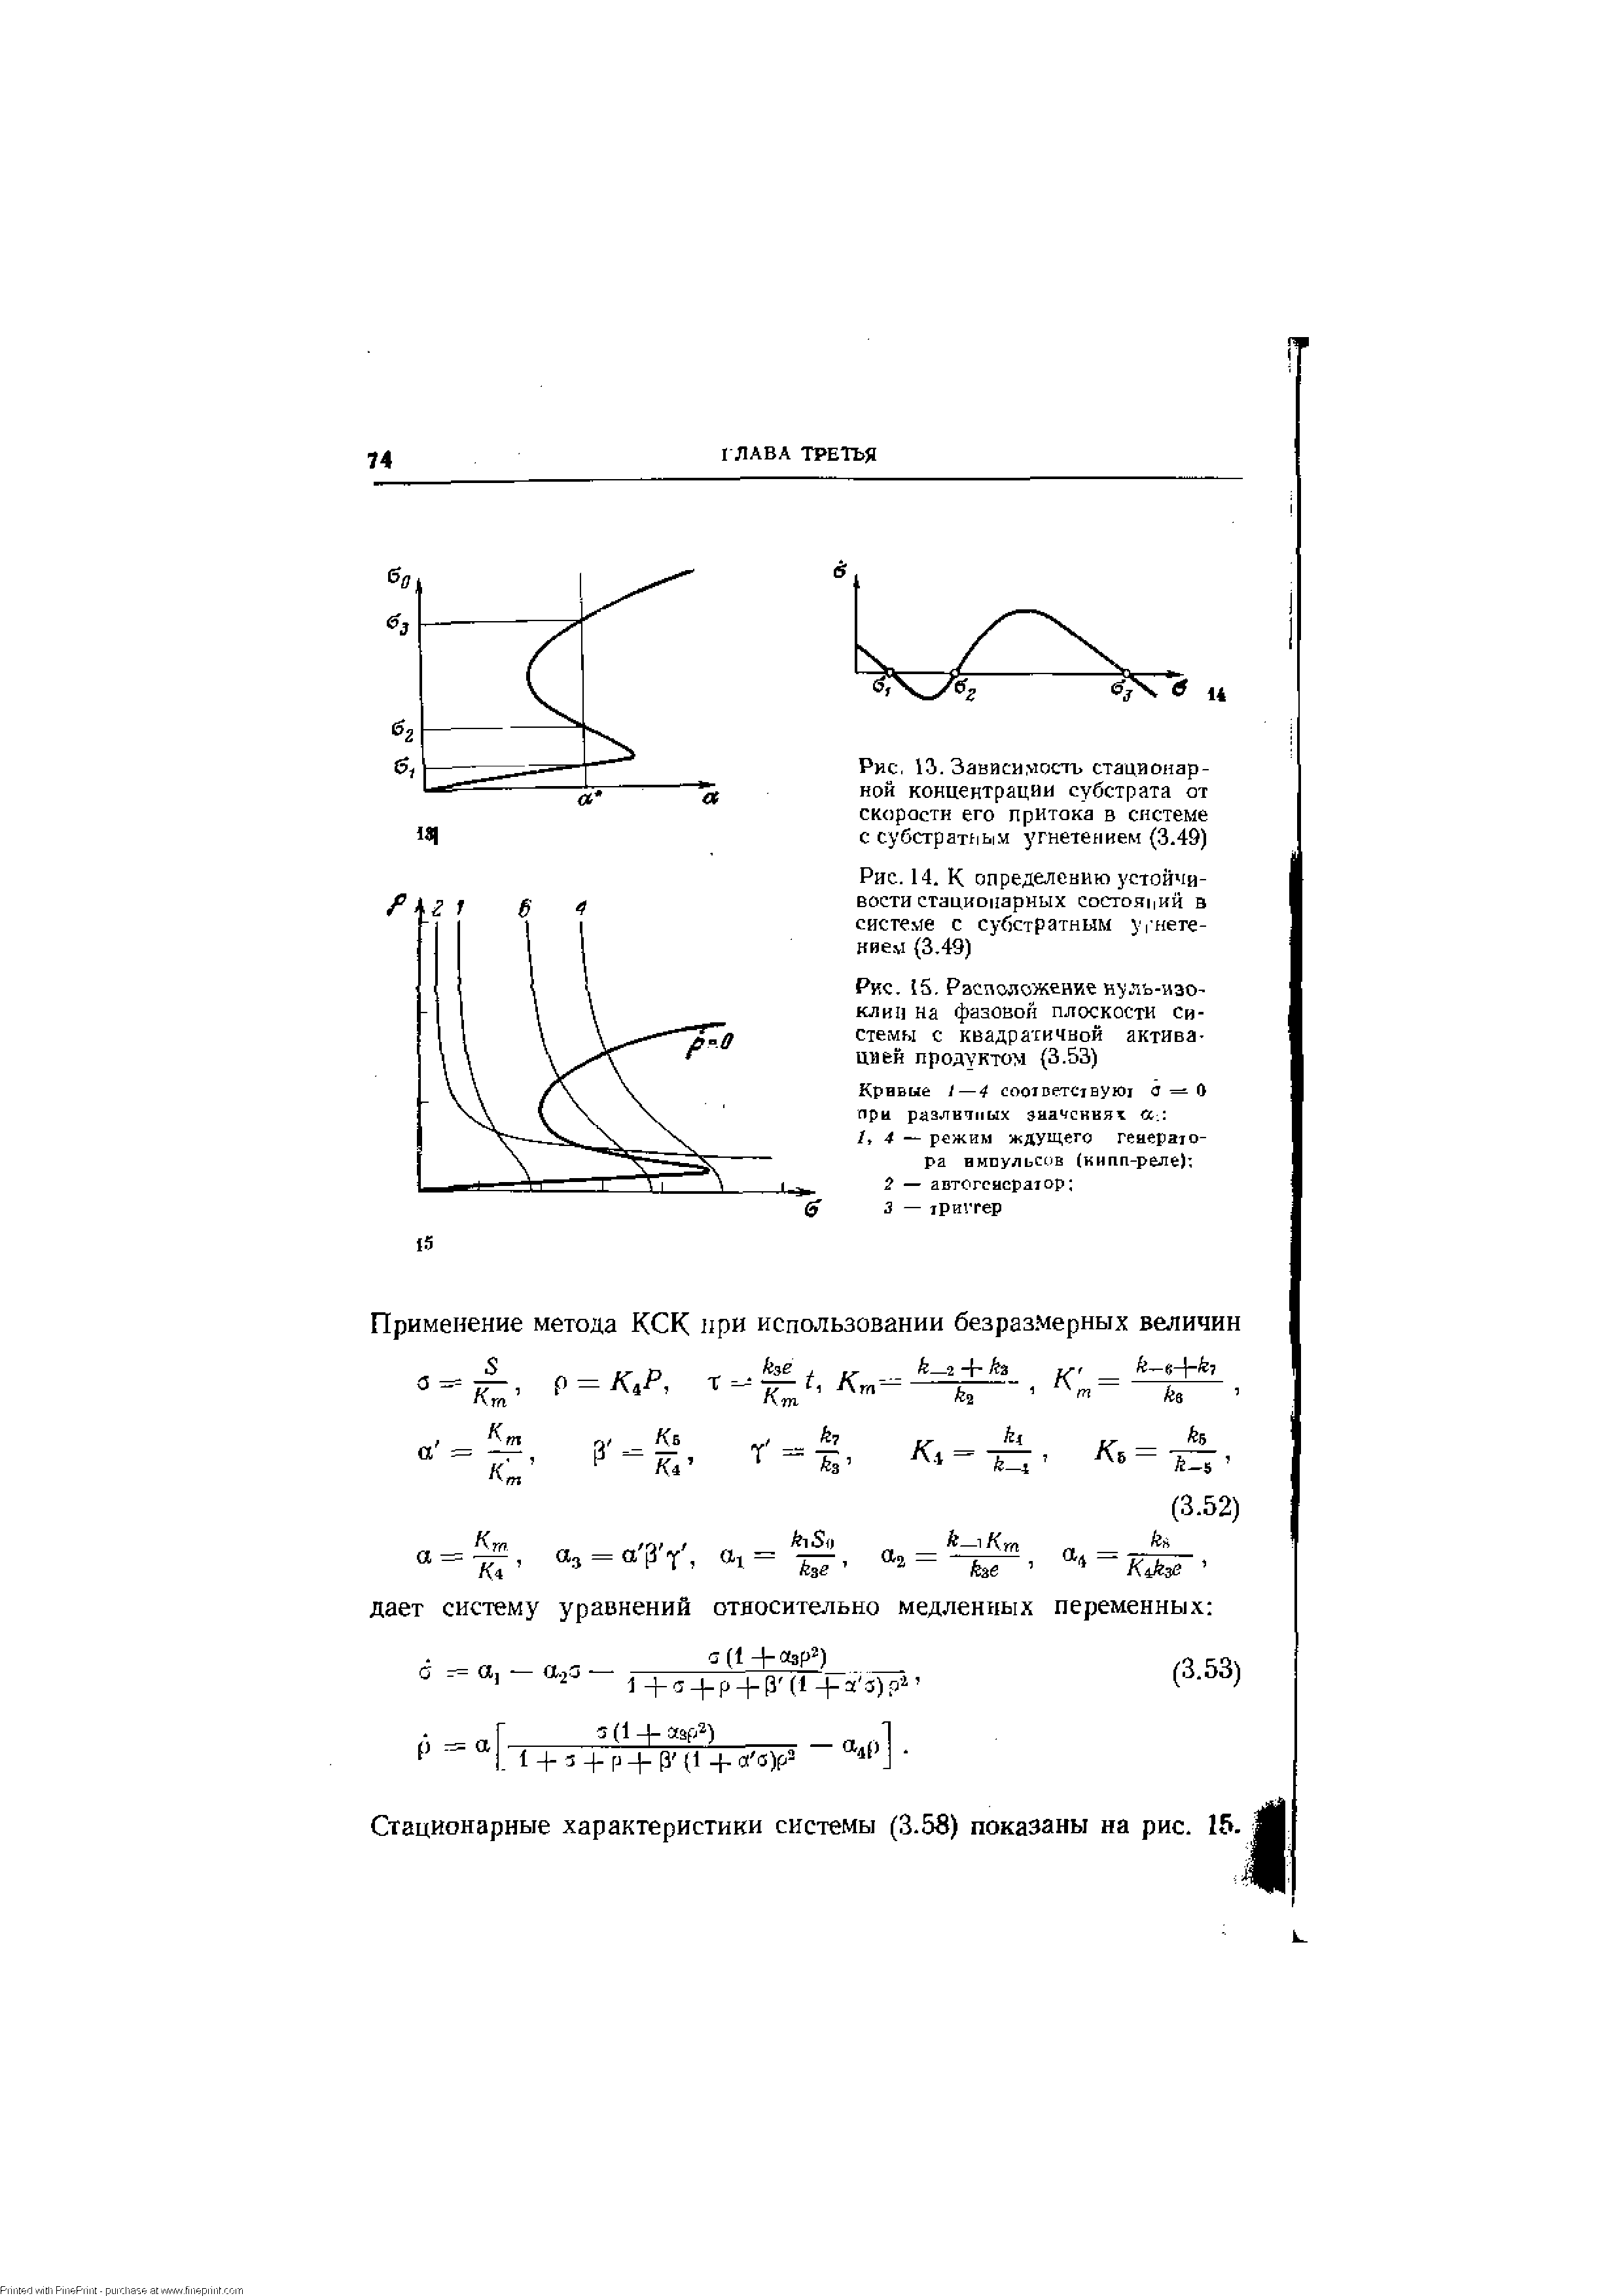 Рис. 15, Распадожение н-уль-изо-клип на фазовой плоскости системы с квадратичной активацией продуктом (3.53)
